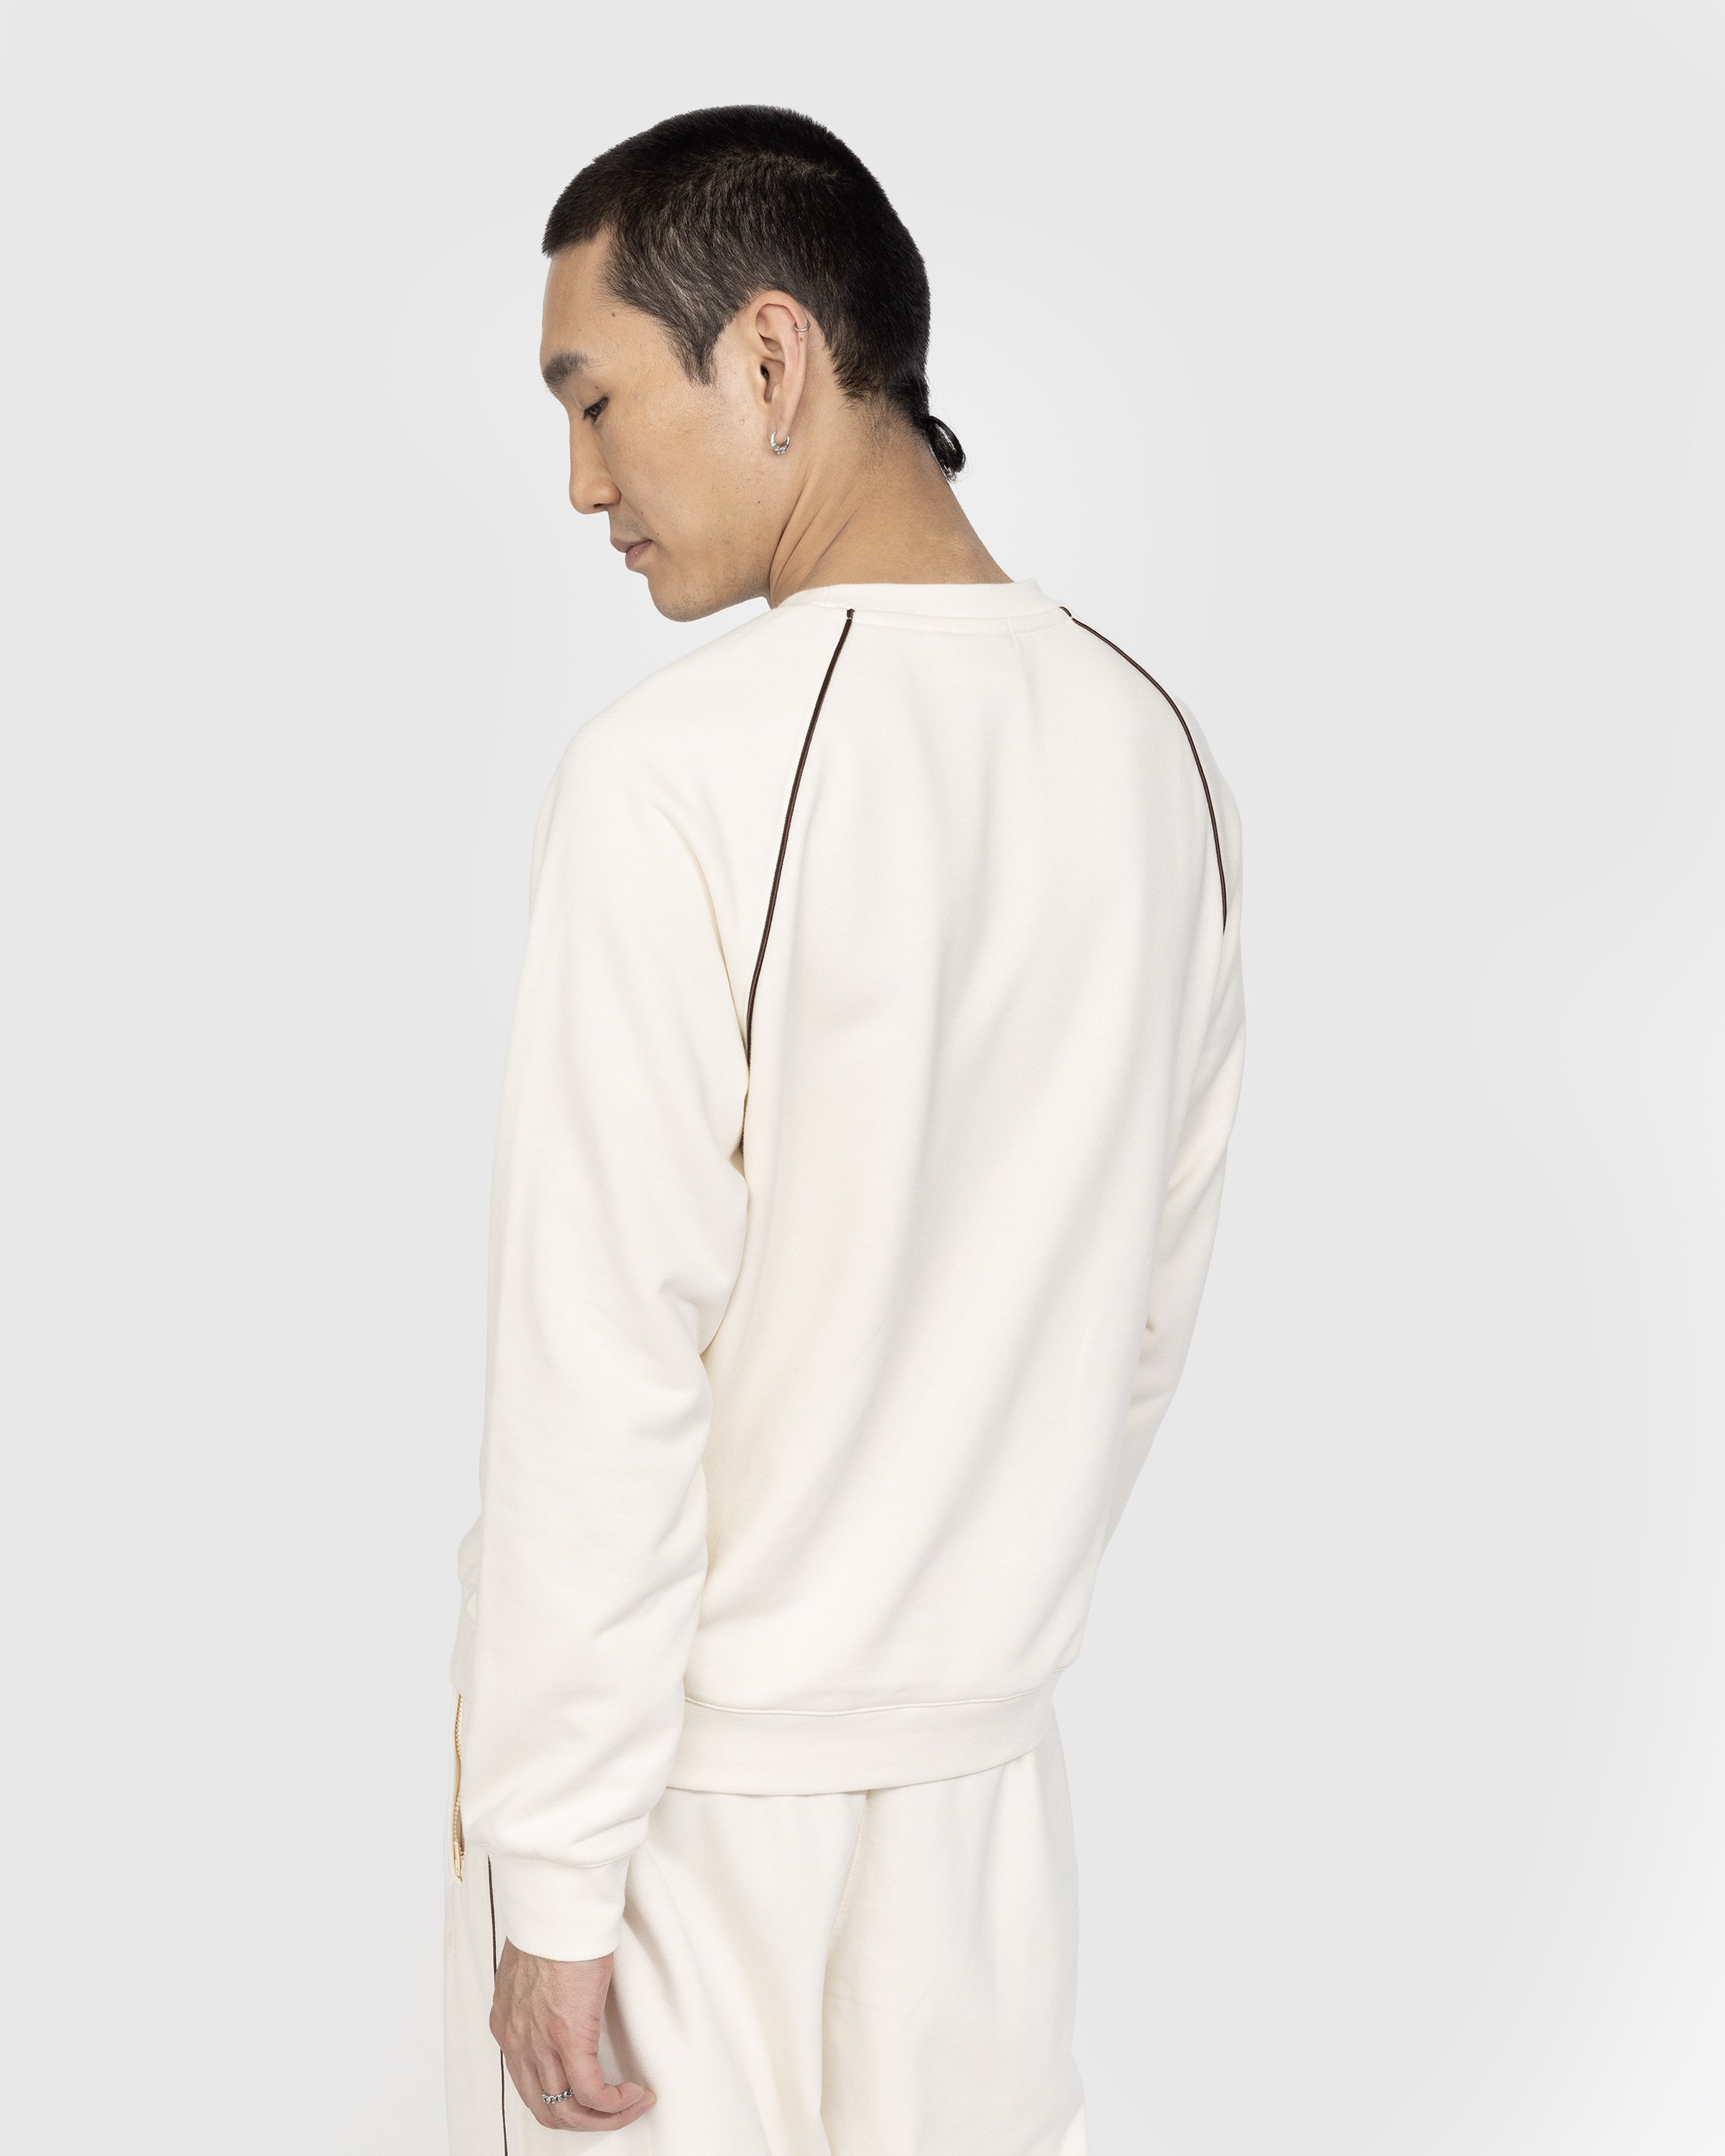 Adidas x Wales Bonner - Crewneck Sweater Wonder White - Clothing - Beige - Image 3